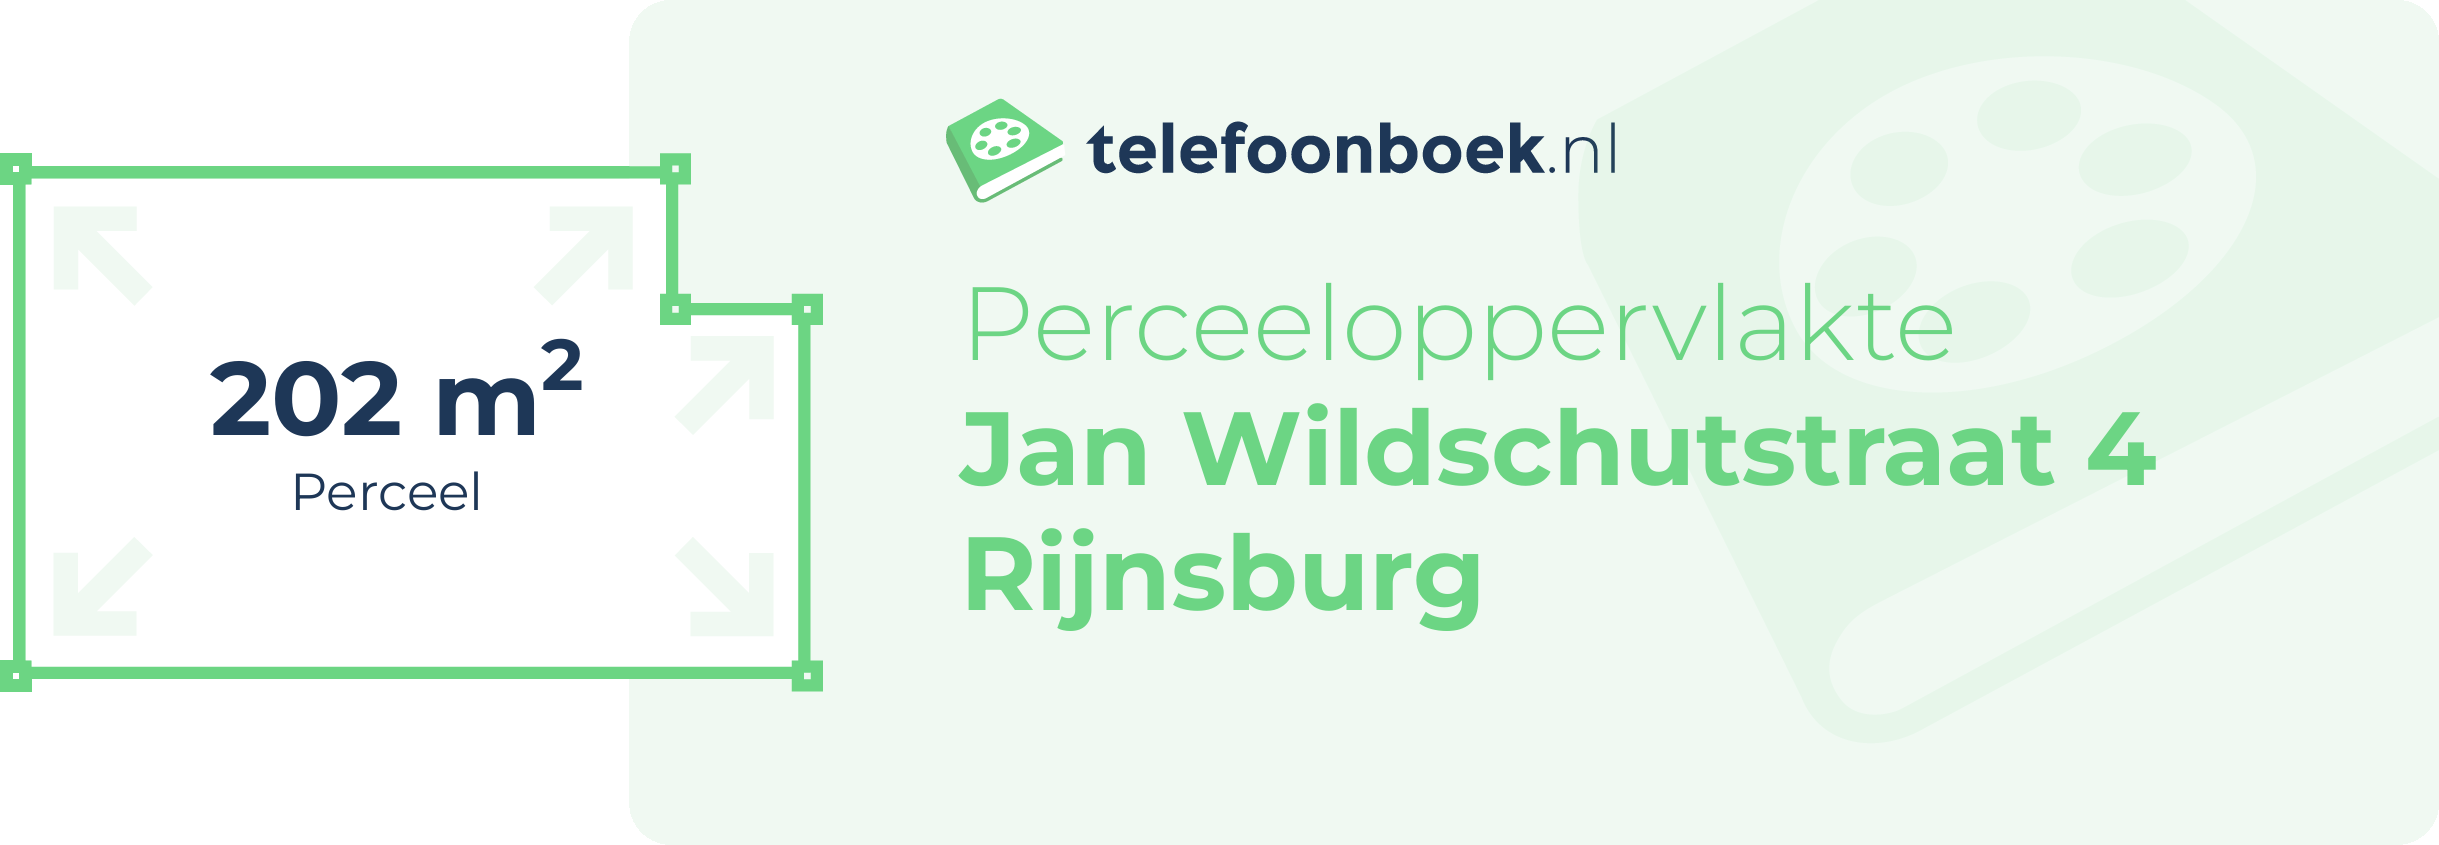 Perceeloppervlakte Jan Wildschutstraat 4 Rijnsburg